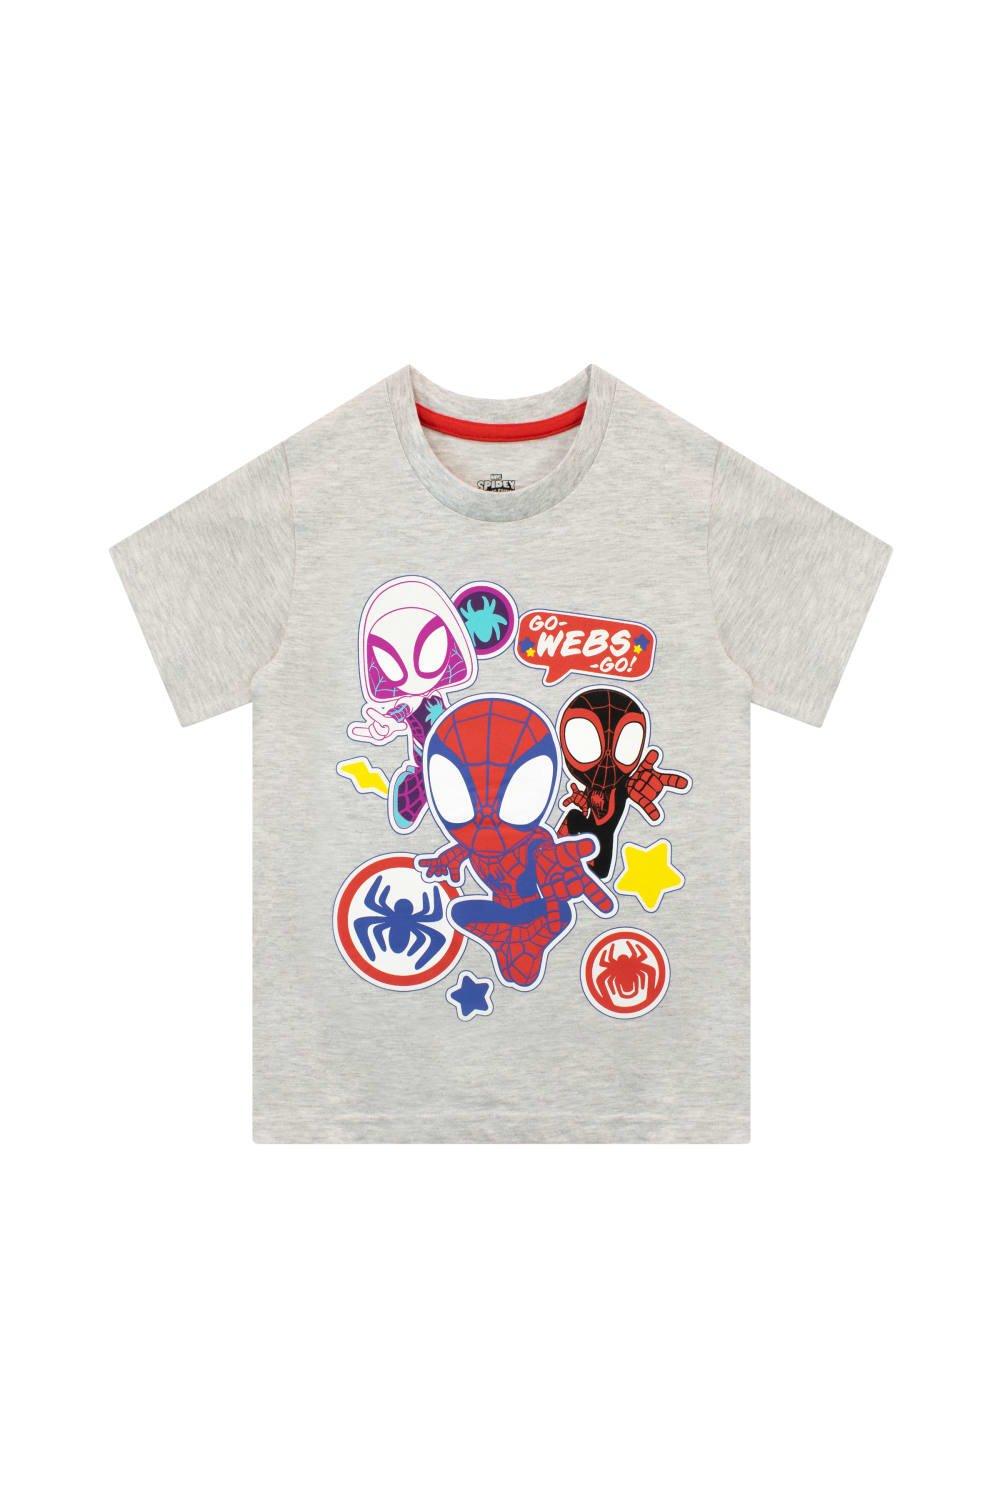 Футболка Spiderman Go Webs Go Marvel, серый куклы из аниме герои диснея фигурки героев мультфильма питер паркер гвен стейси мини экшн фигурки сборные игрушки детские подарки